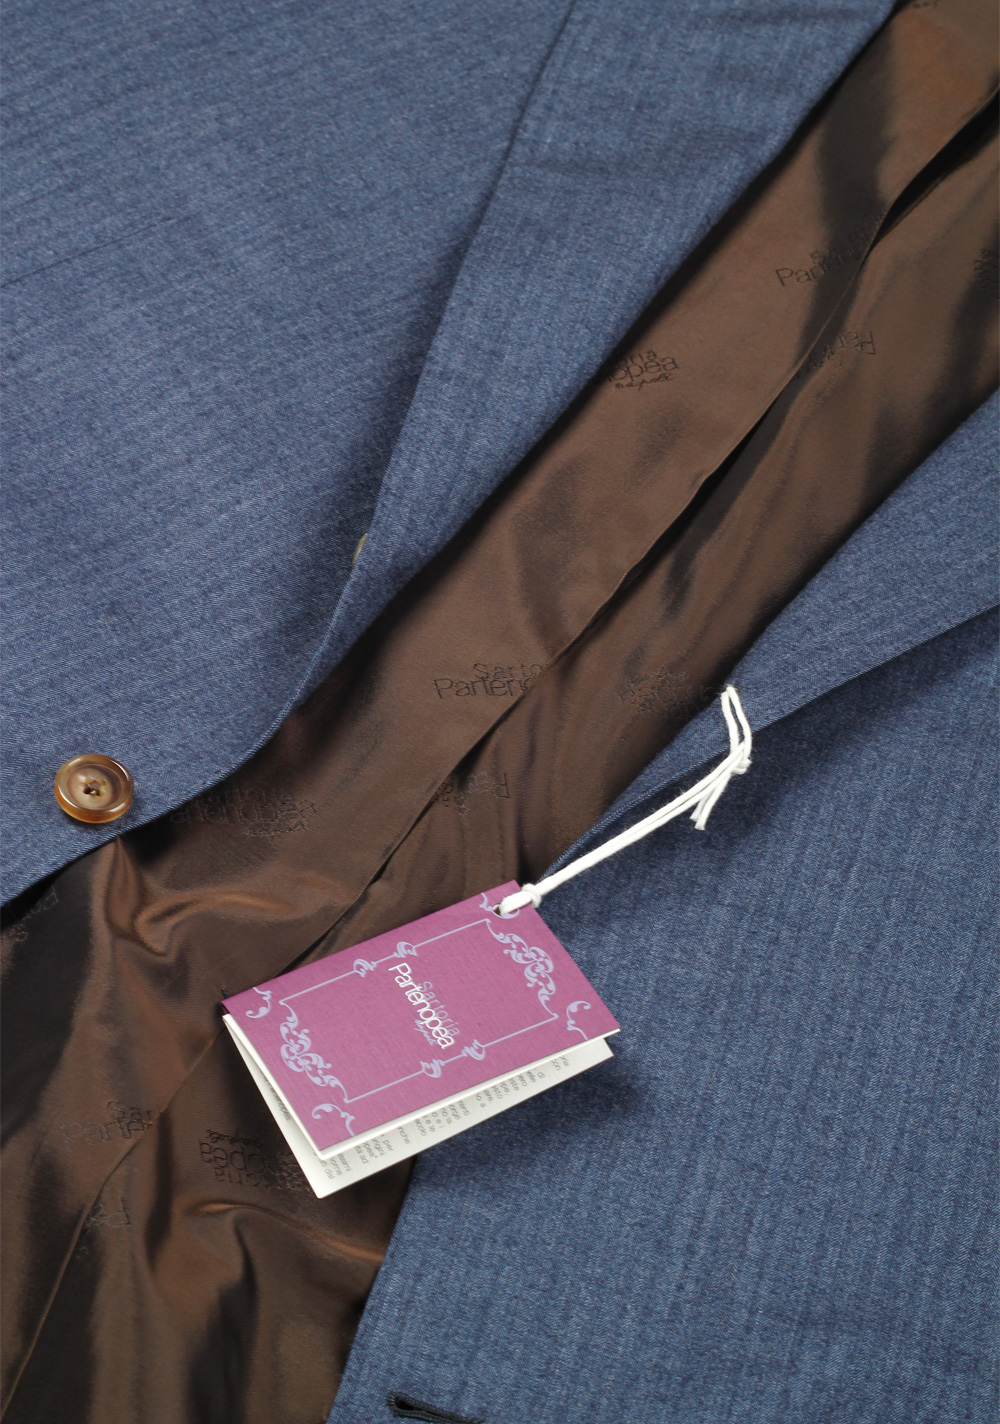 Sartoria Partenopea Blue Suit Size 58 / 48R U.S. In Wool Silk | Costume Limité